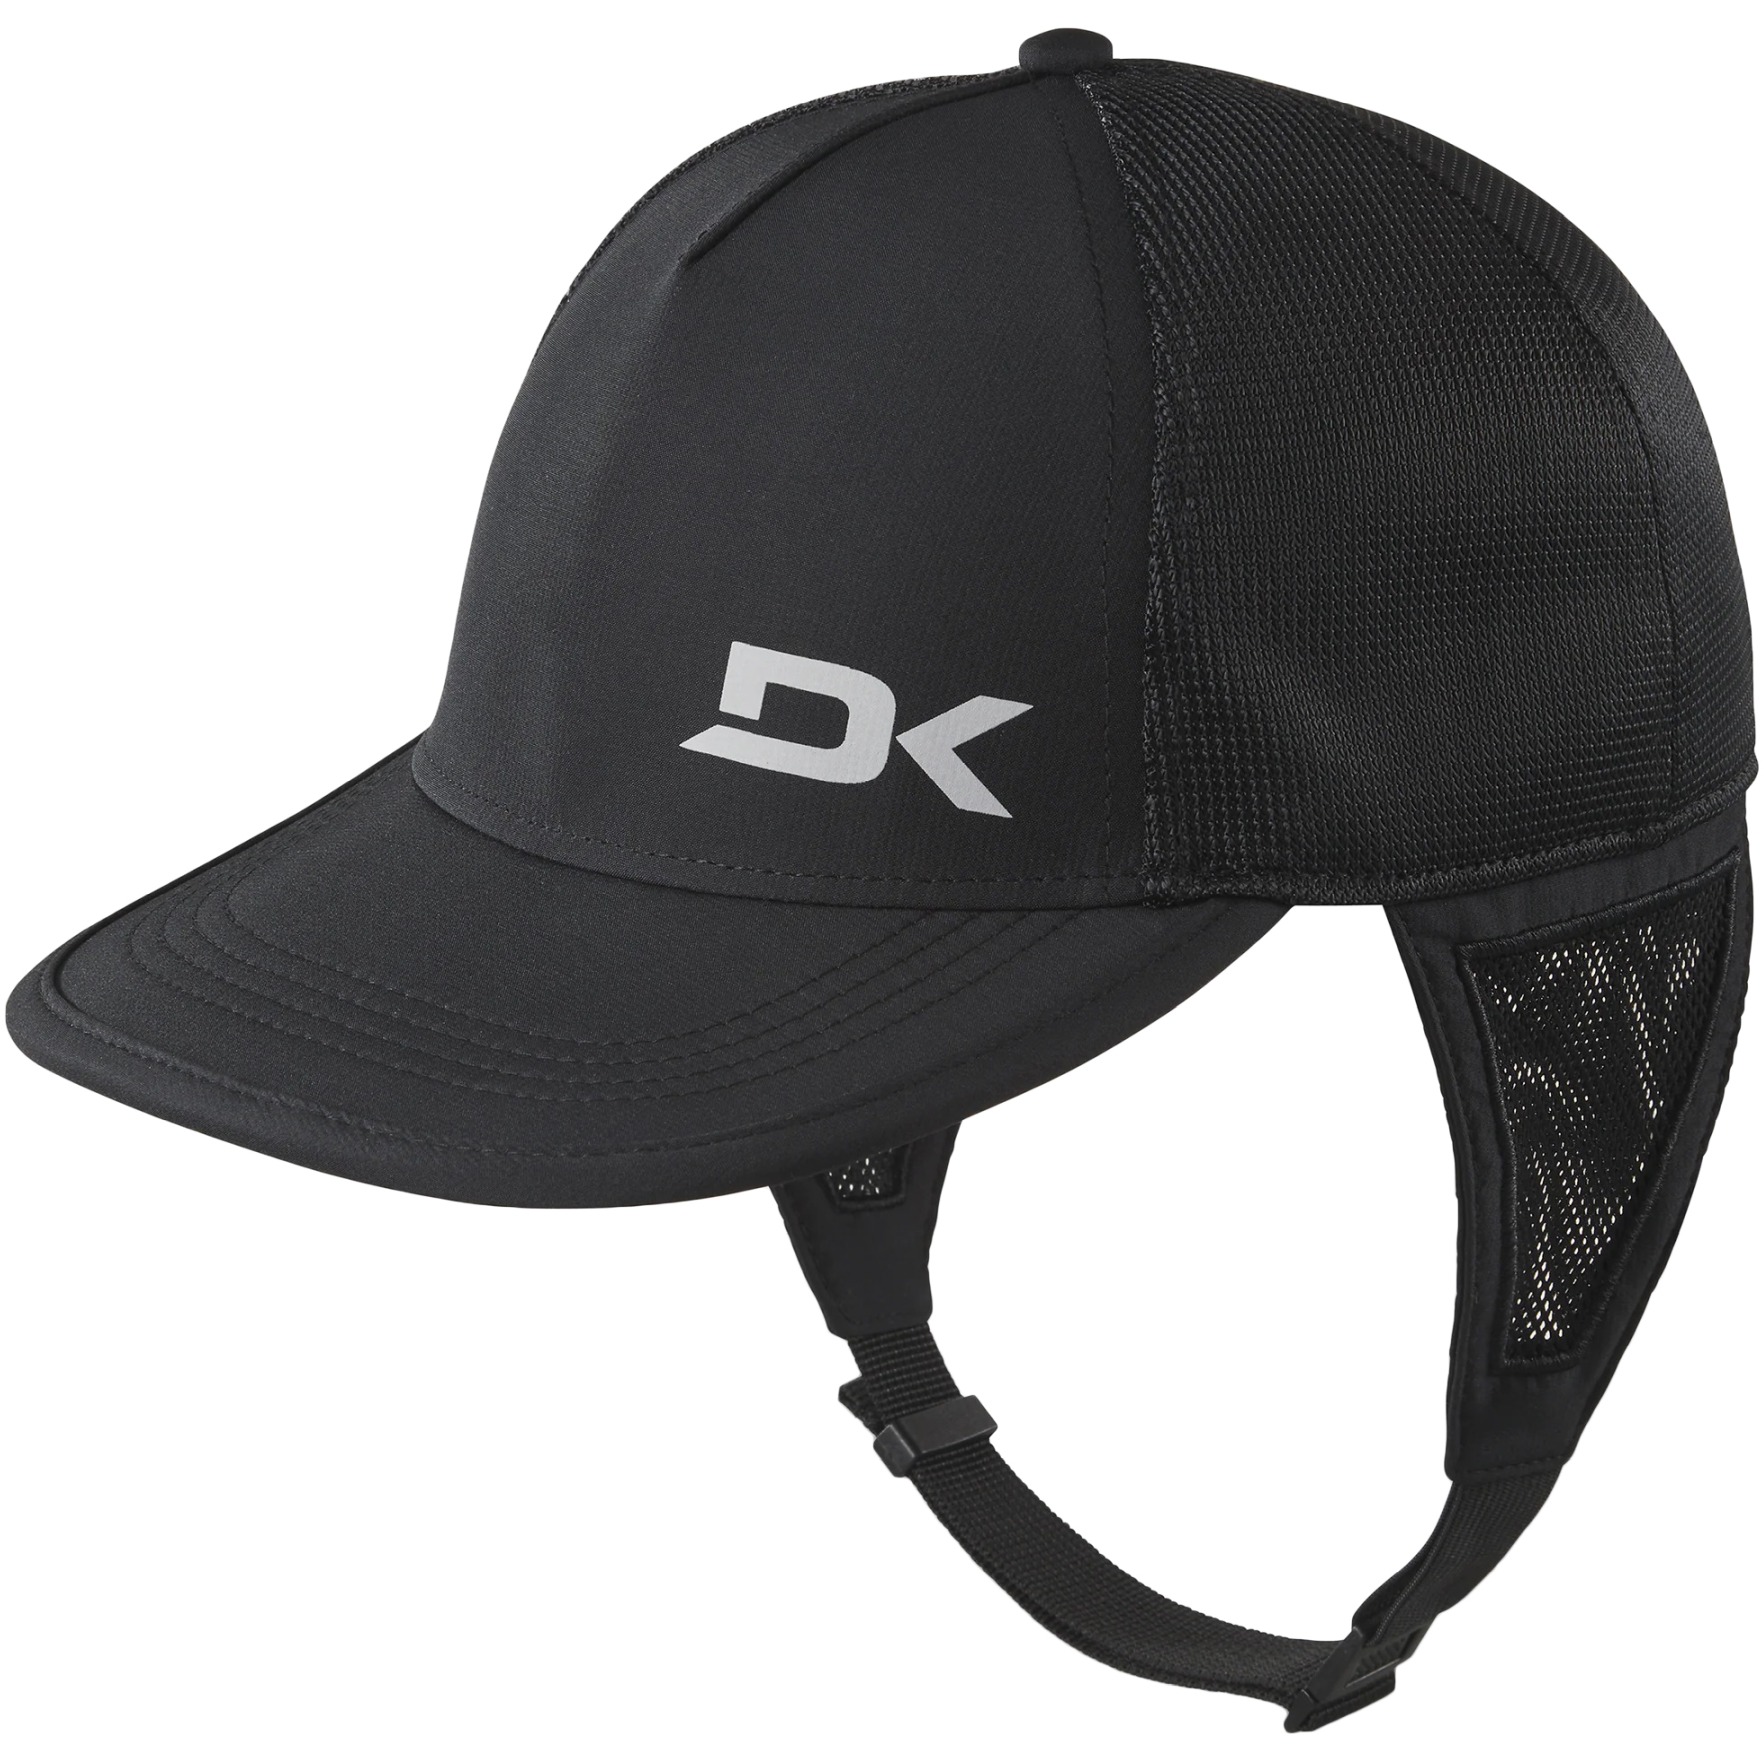 Produktbild von Dakine Surf Trucker Cap - schwarz